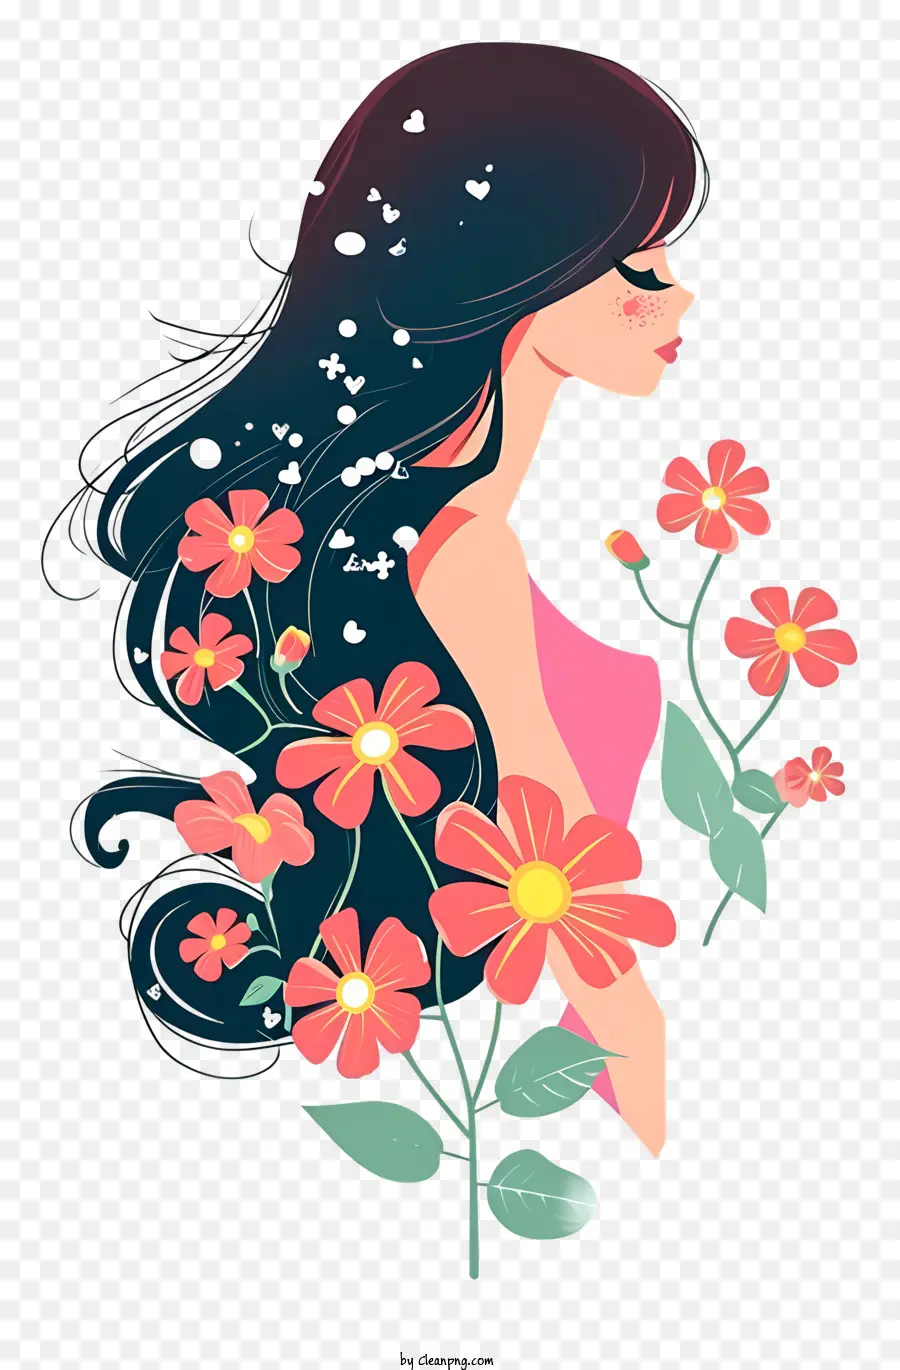 Frau und Blumen simple Vektorkunst Schönheit langes Haar schwarzes Haar lächeln - Gelassenheit und Schönheit in einer floralen Landschaft